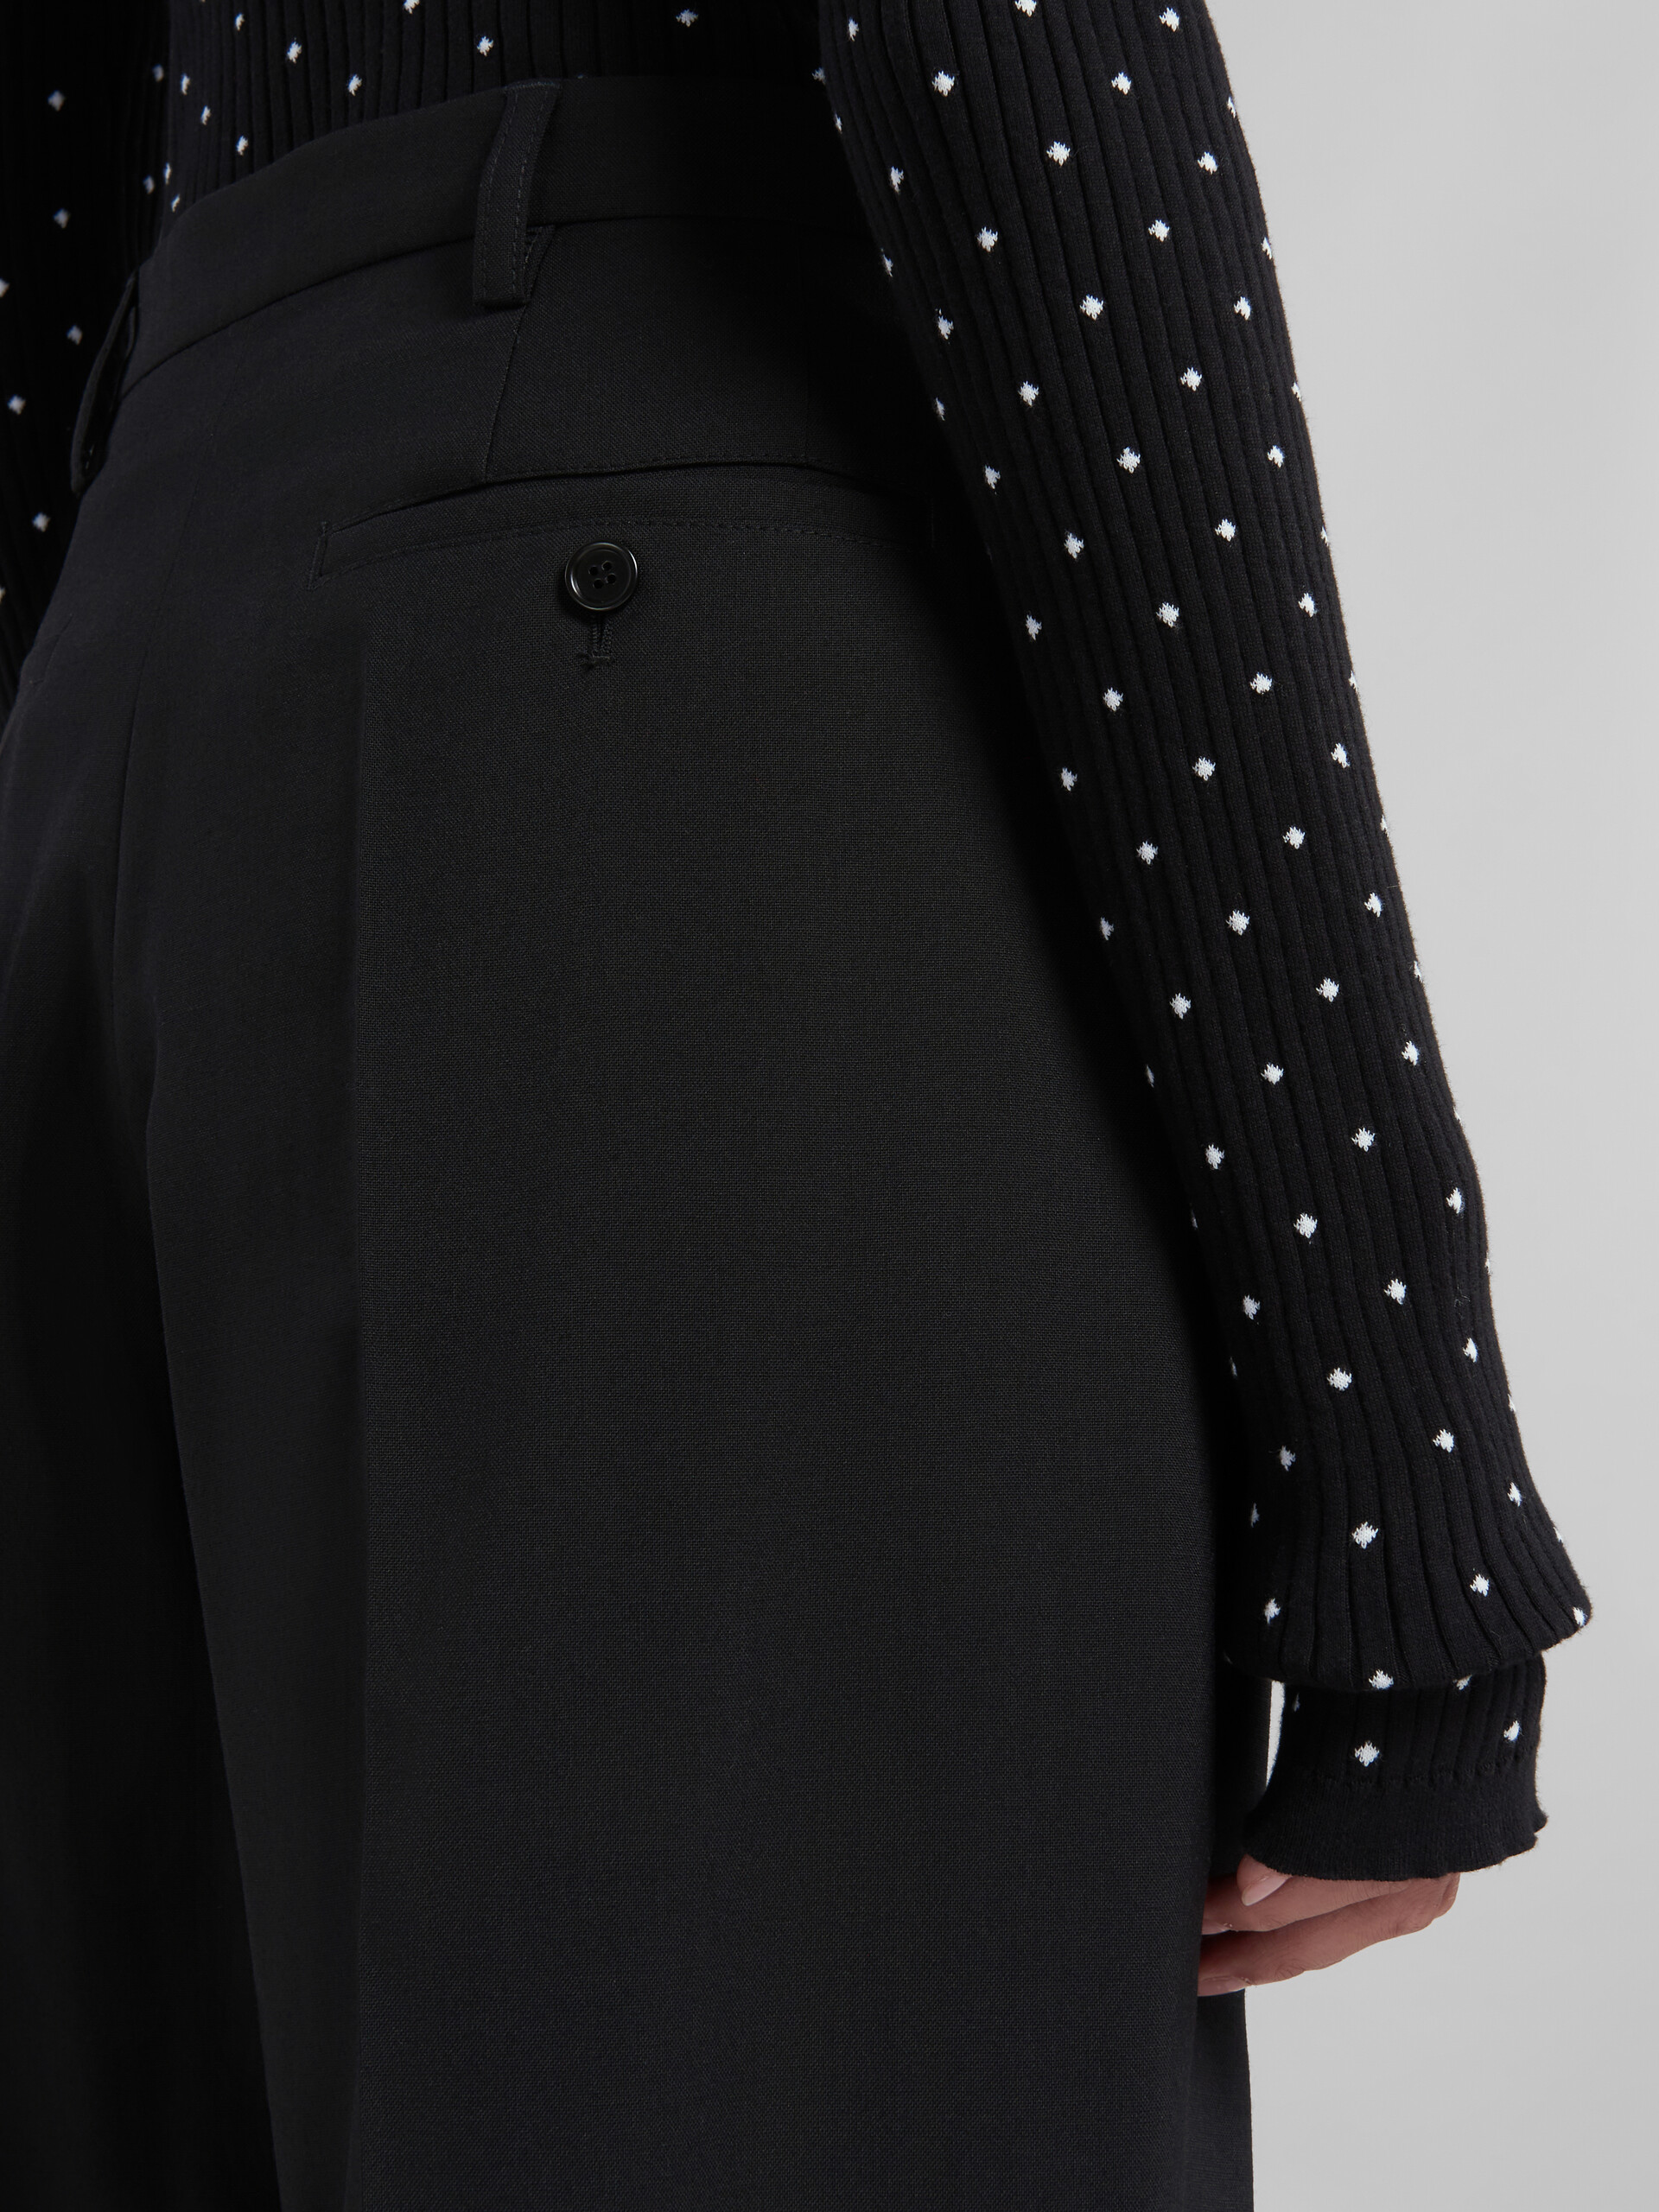 Pantalón de sastre negro de lana tropical - Pantalones - Image 4